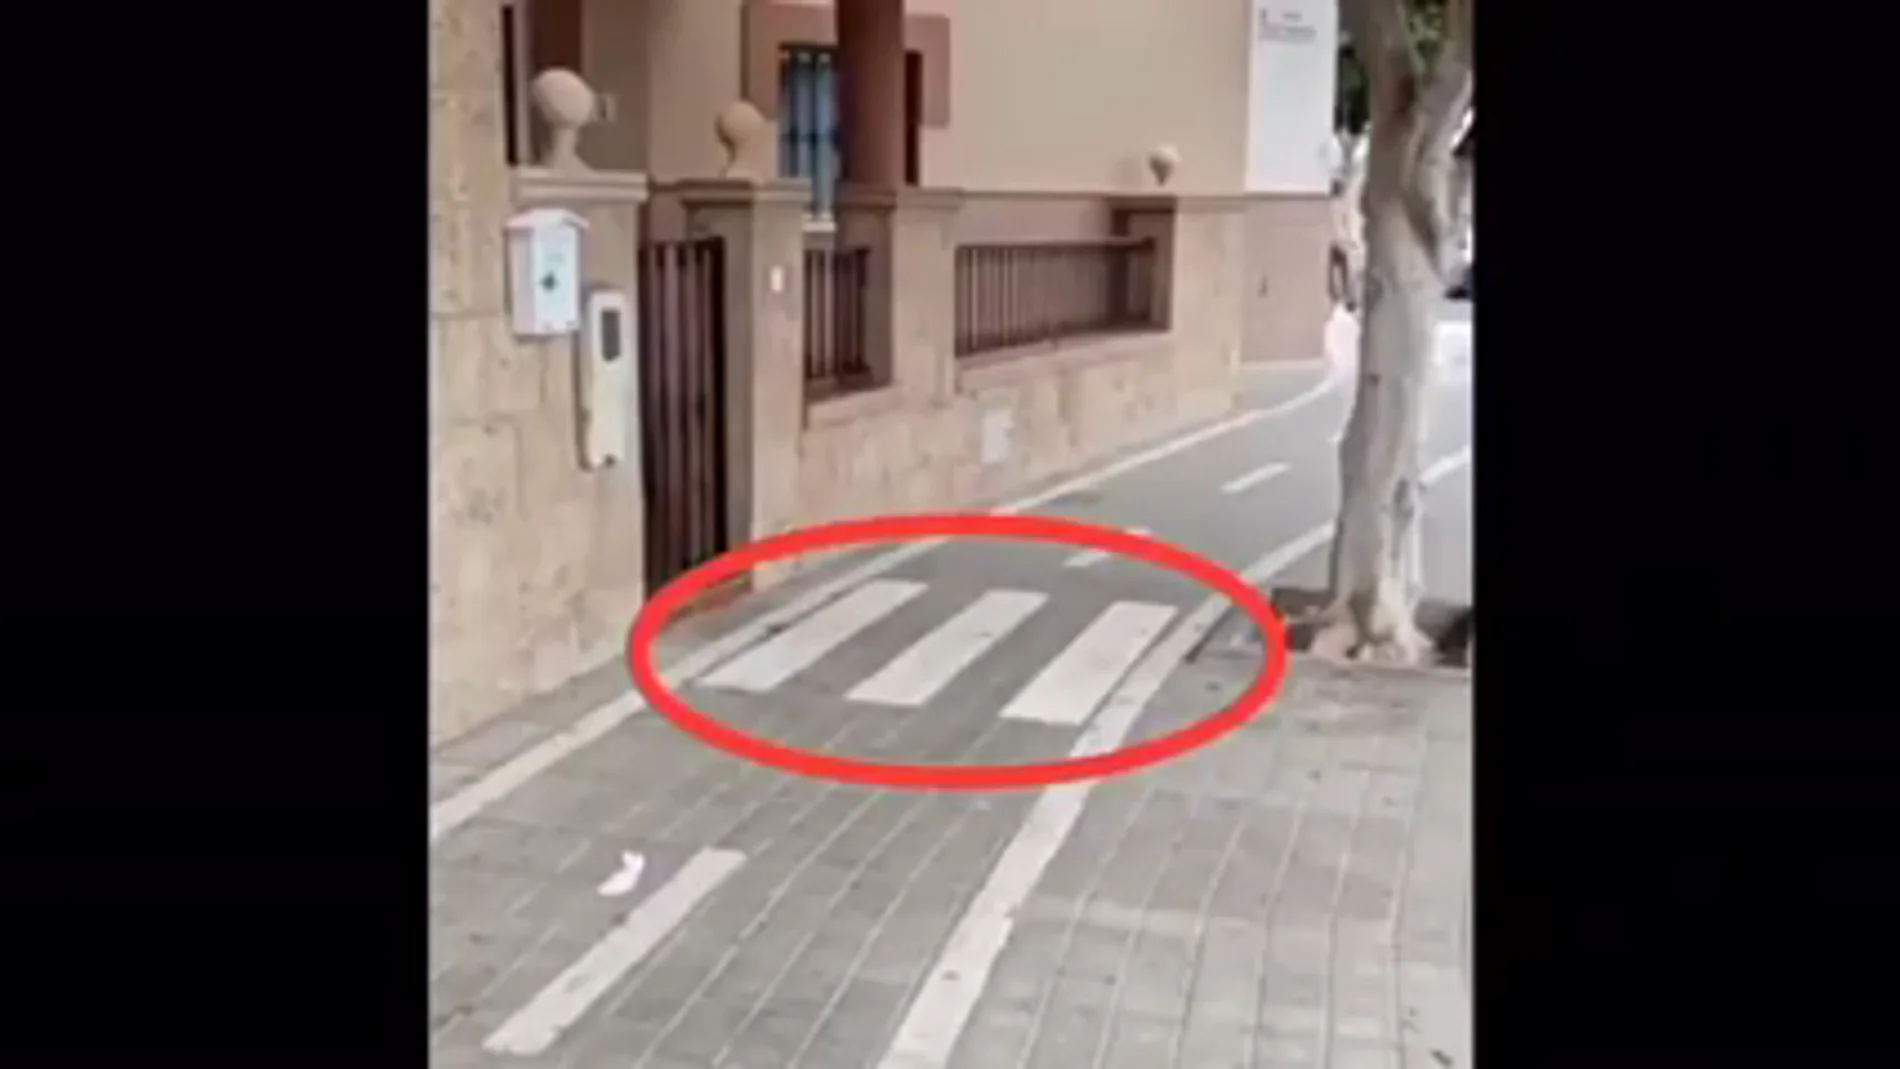 Una mujer de Almería denuncia que han puesto un carril bici delante de su casa y no puede salir